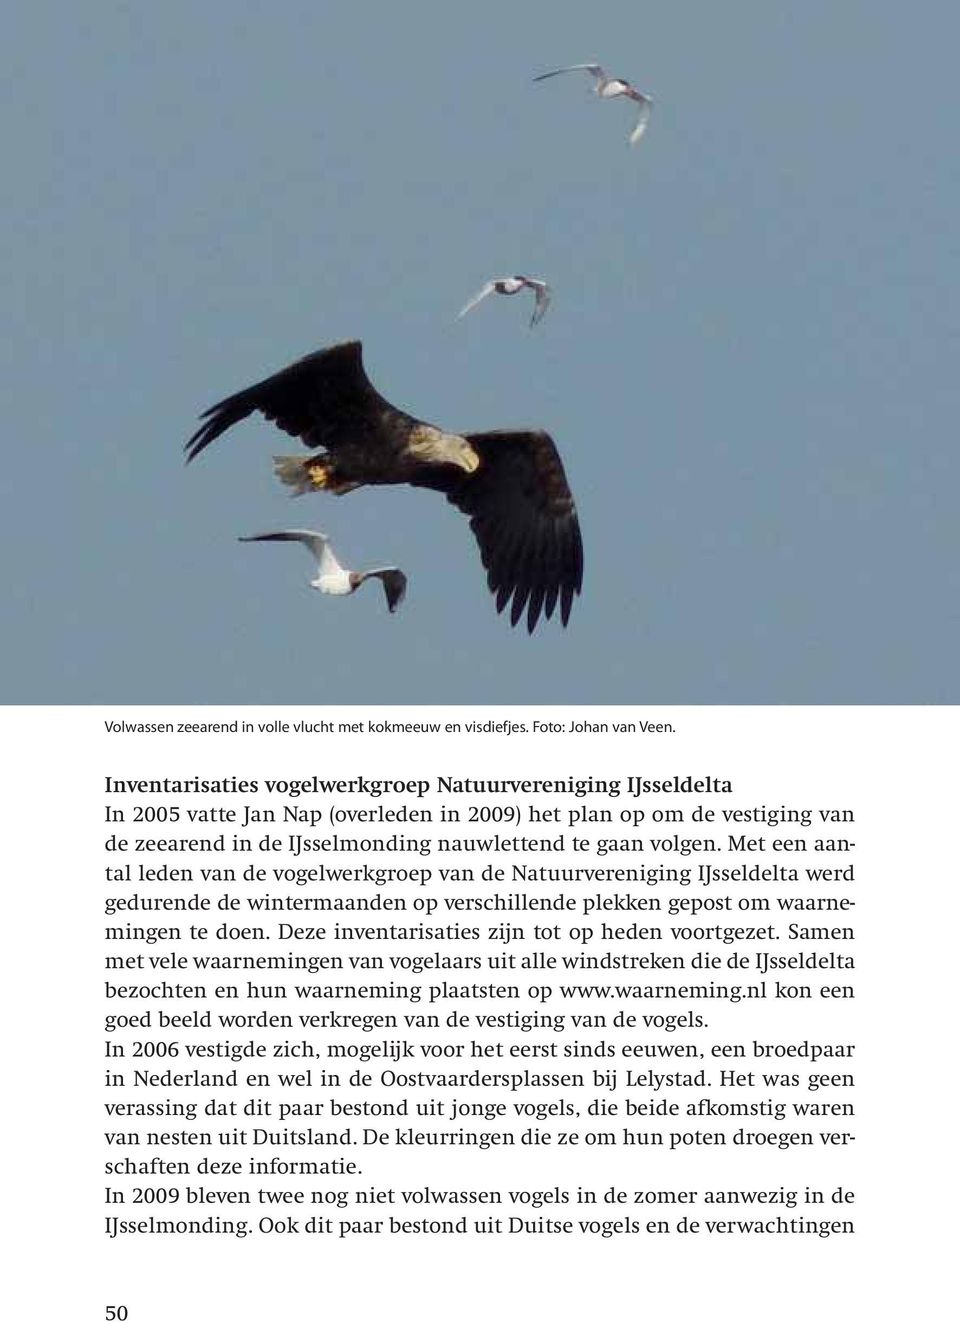 Met een aantal leden van de vogelwerkgroep van de Natuurvereniging IJsseldelta werd gedurende de wintermaanden op verschillende plekken gepost om waarnemingen te doen.